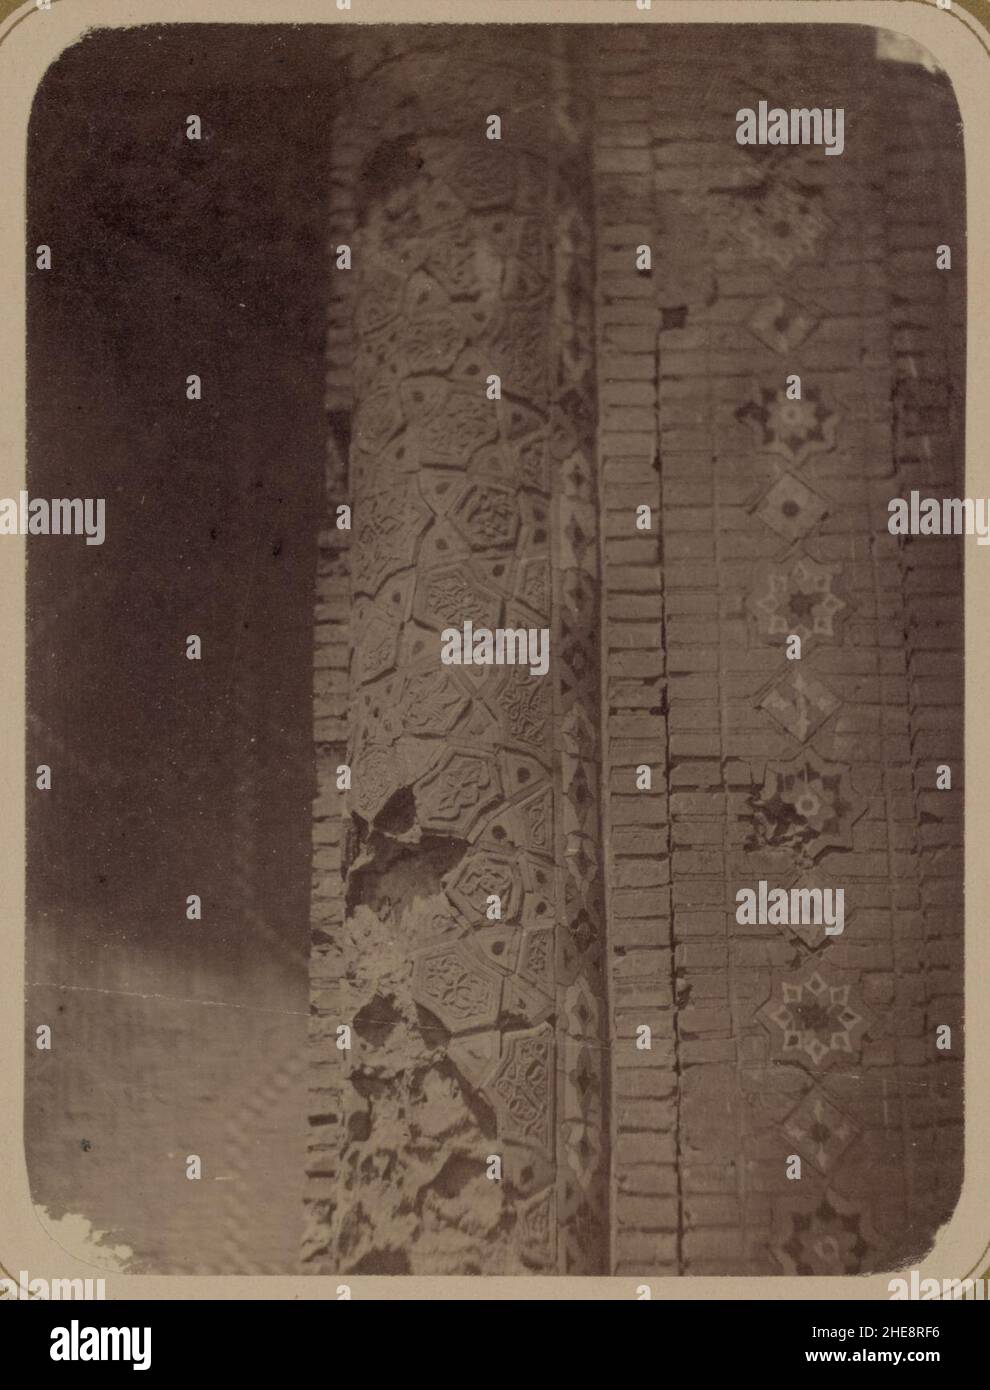 Samarkandskiia drevnosti. Medrese Bibi-Khanym sobornaia mechet'. Chast' (sterzhen') kolony (sic) Stock Photo